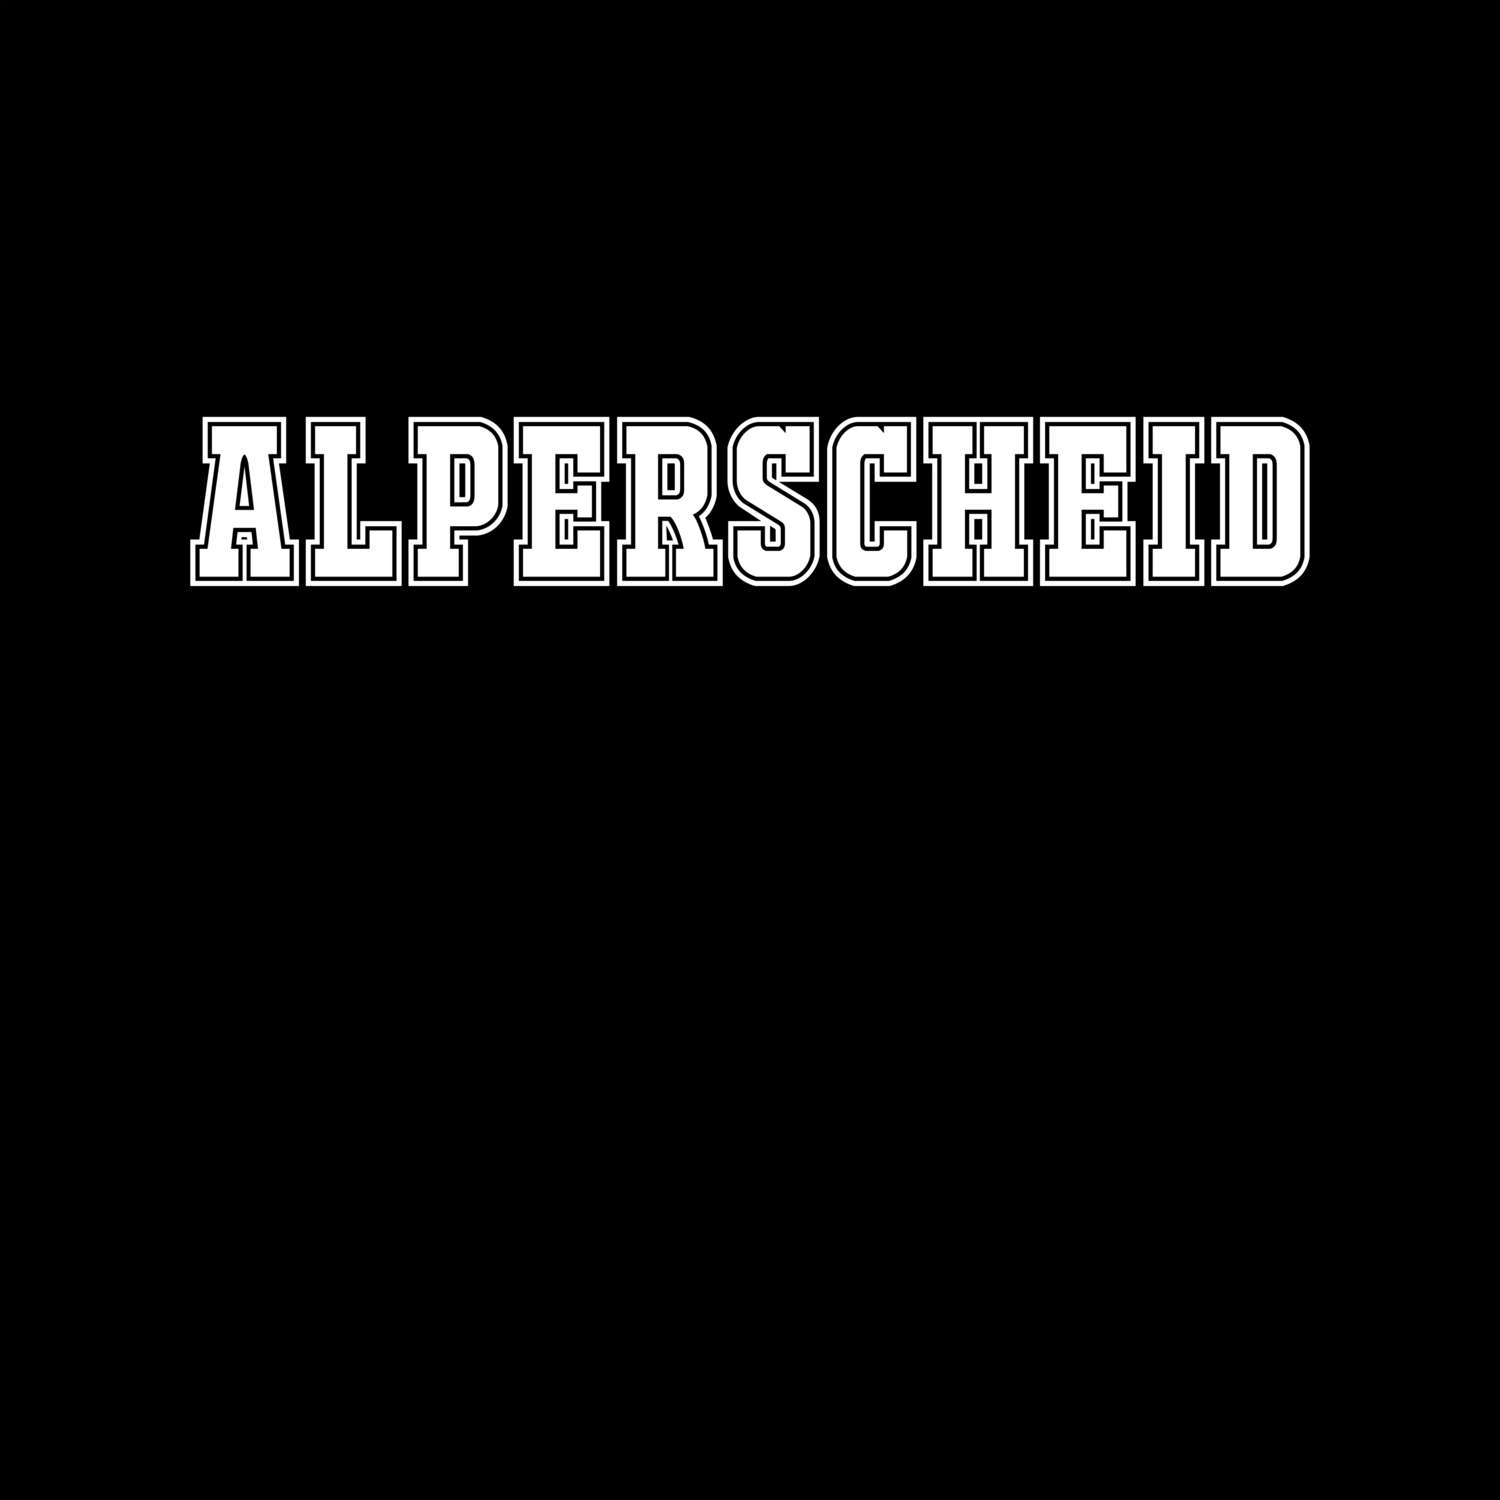 Alperscheid T-Shirt »Classic«